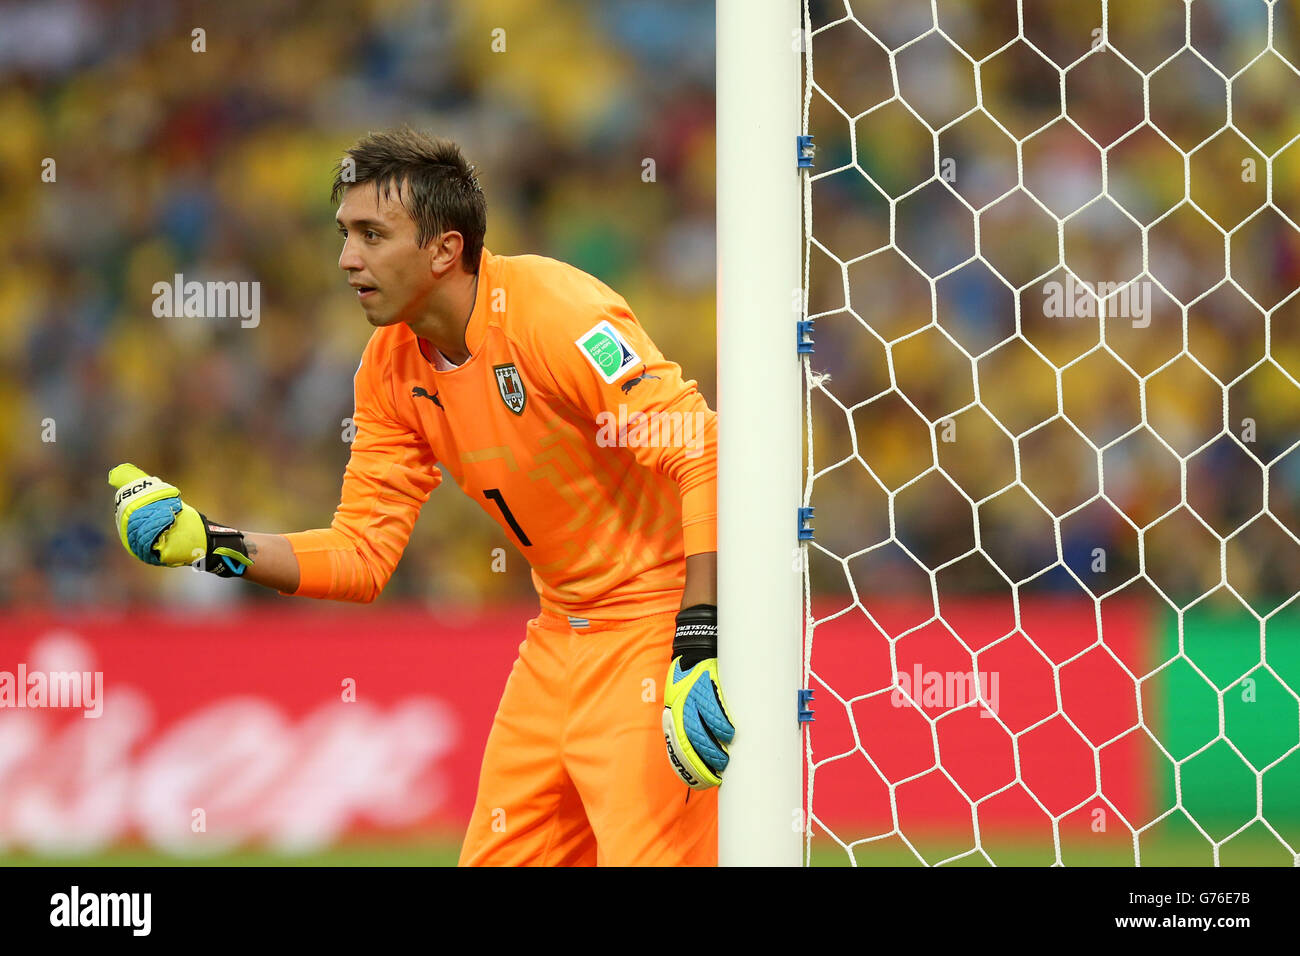 Soccer - FIFA World Cup 2014 - Round of 16 - Colombia v Uruguay - Estadio do Maracana. Fernando Muslera, Uruguay goalkeeper Stock Photo